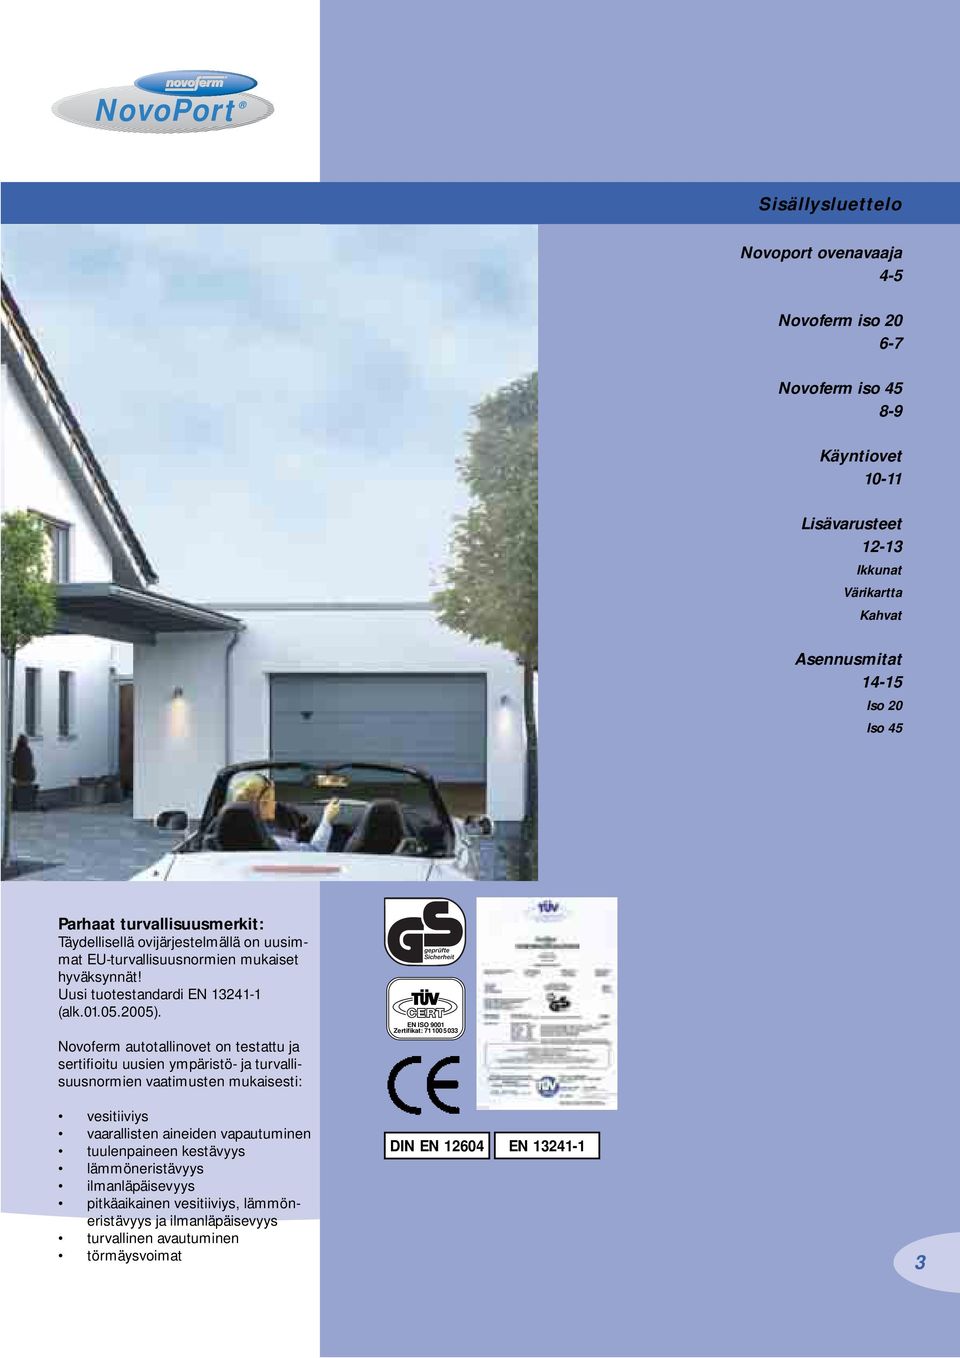 Novoferm autotallinovet on testattu ja sertifioitu uusien ympäristö- ja turvallisuusnormien vaatimusten mukaisesti: EN ISO 9001 Zertifikat: 71100 5033 vesitiiviys vaarallisten